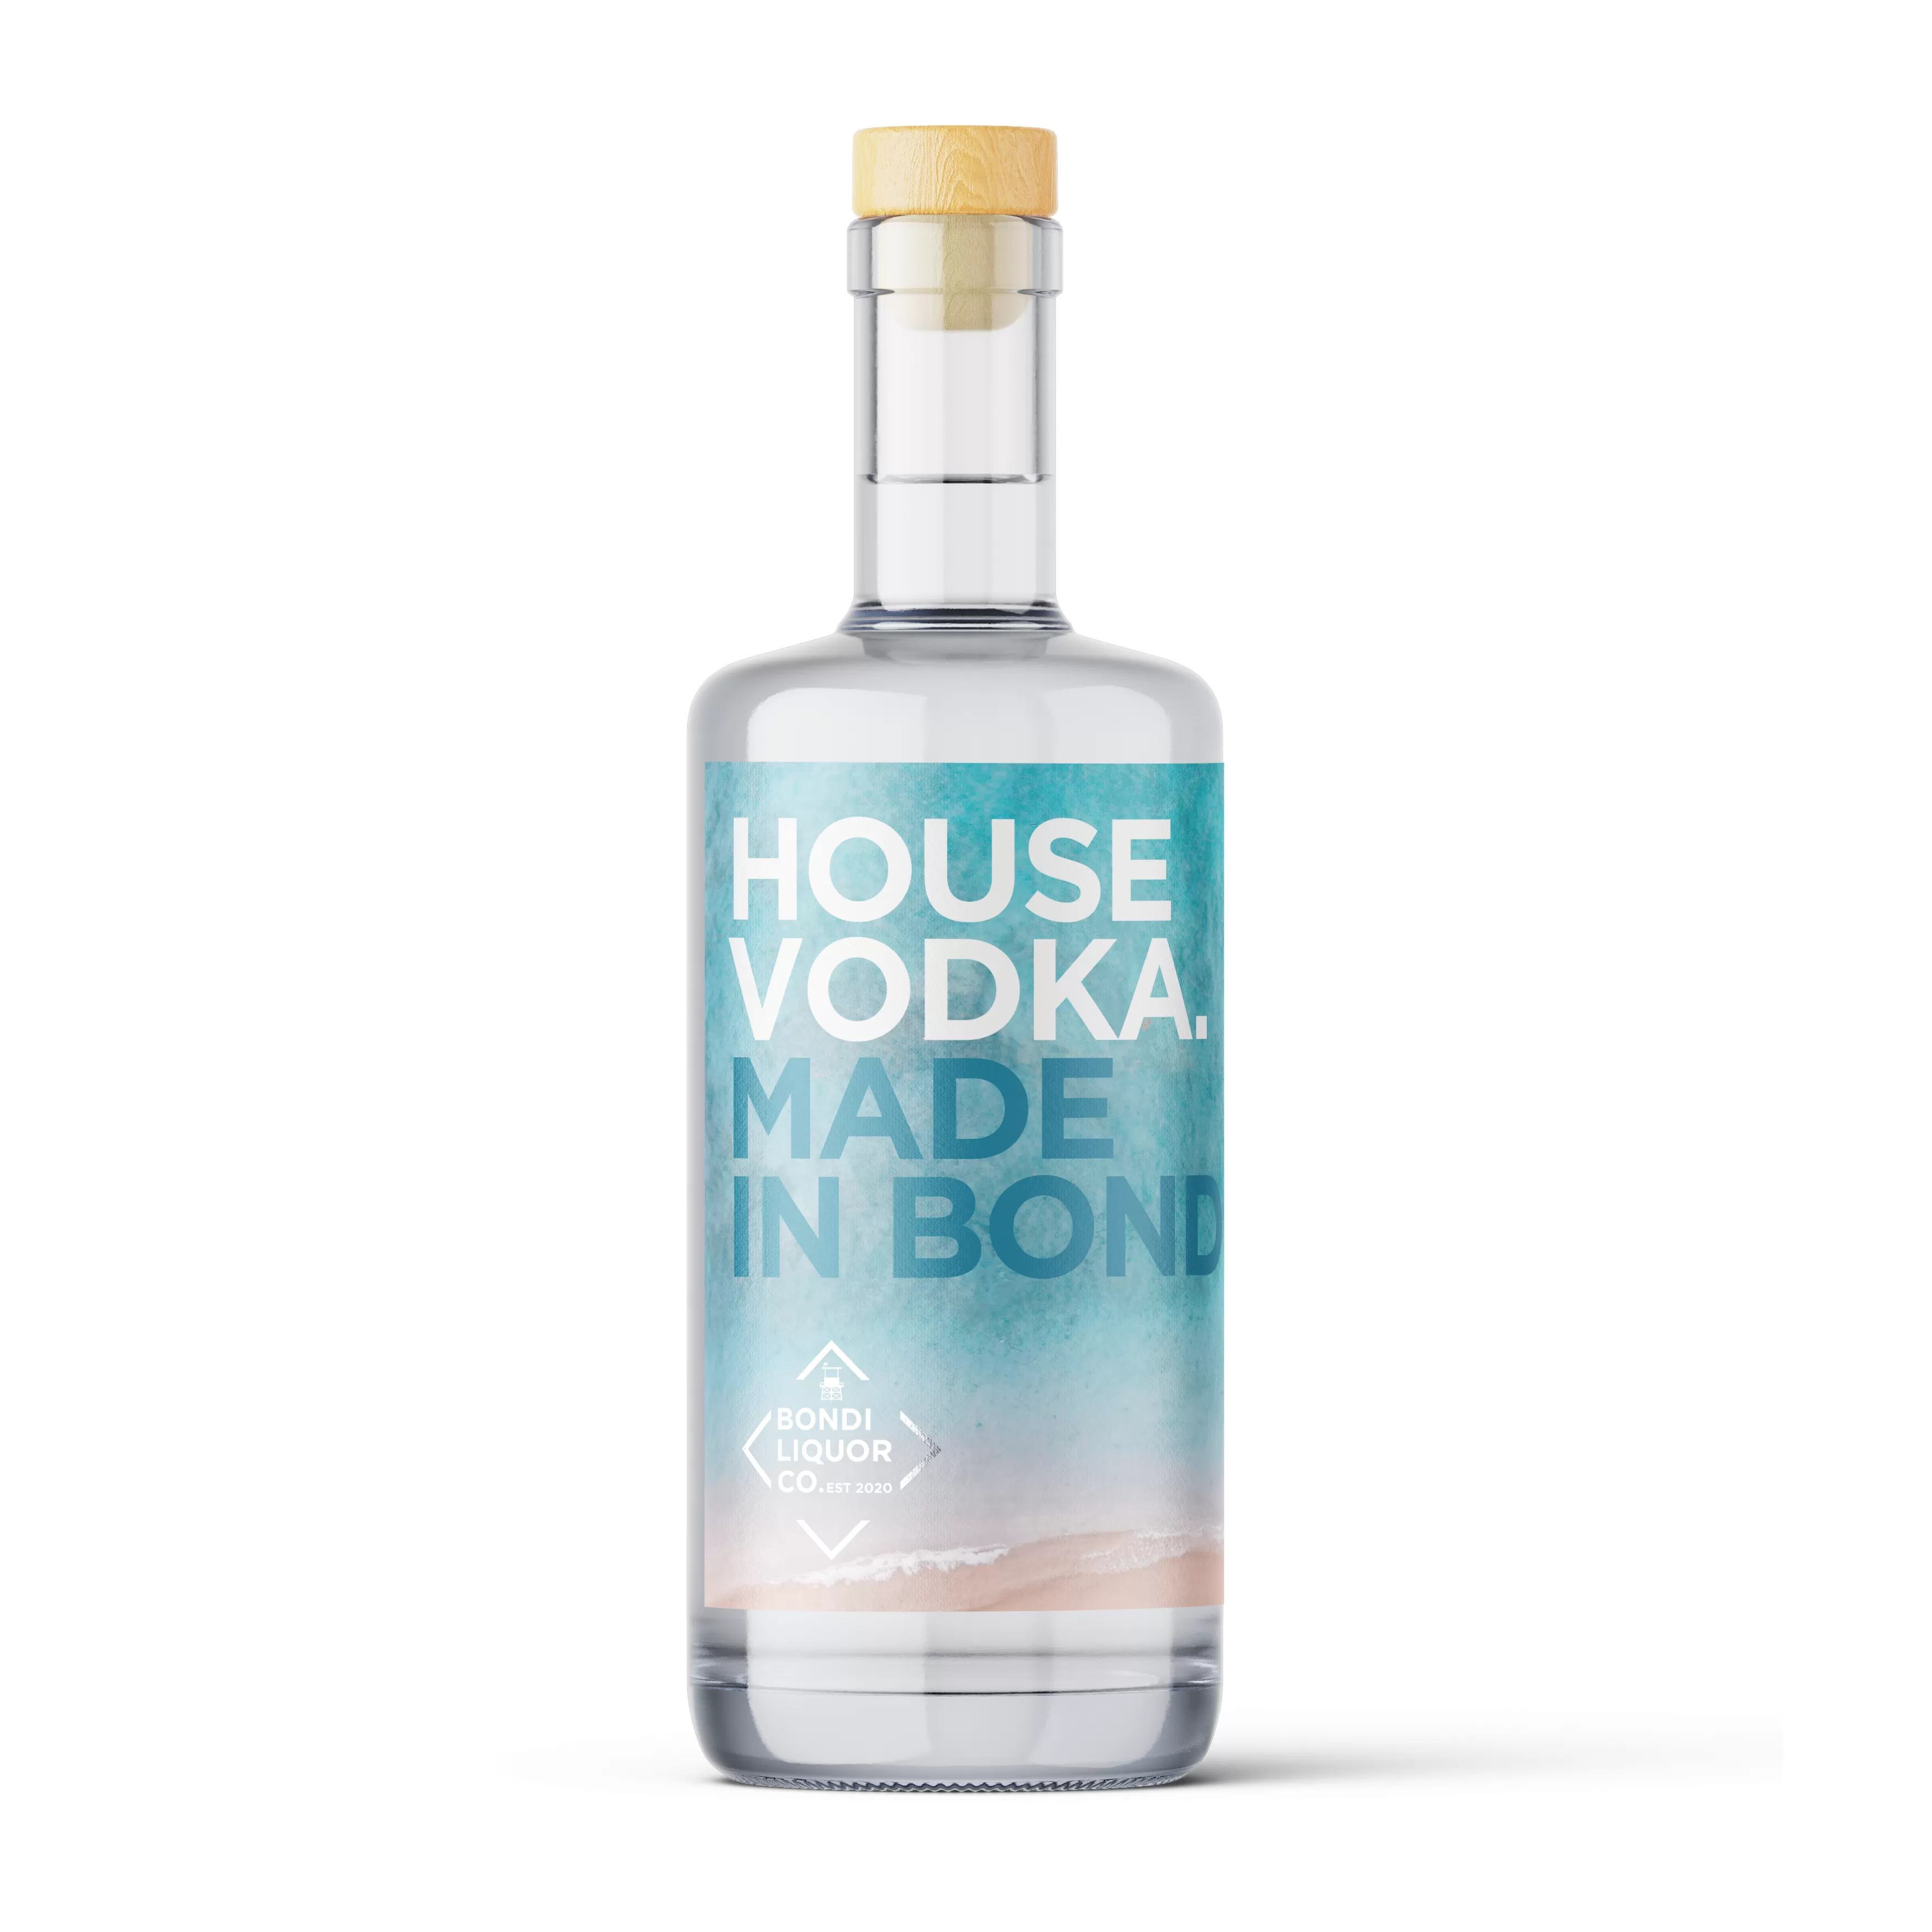 Bondi Liquor Co House Vodka 500ml